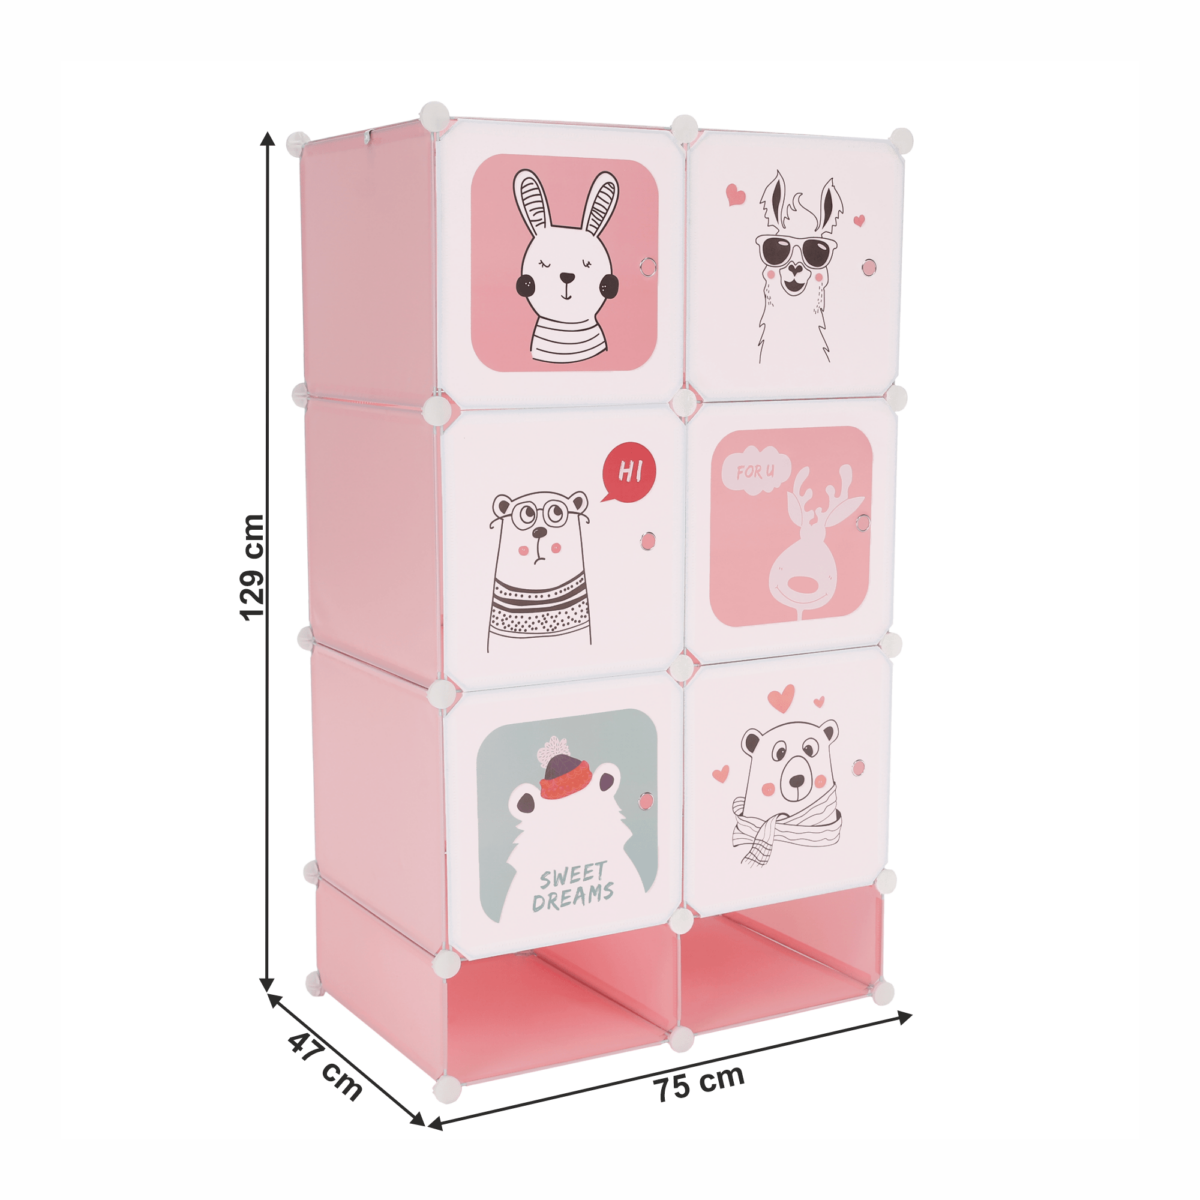 Moduláris szekrény gyerekeknek, rózsaszín/gyerek minta, NORME